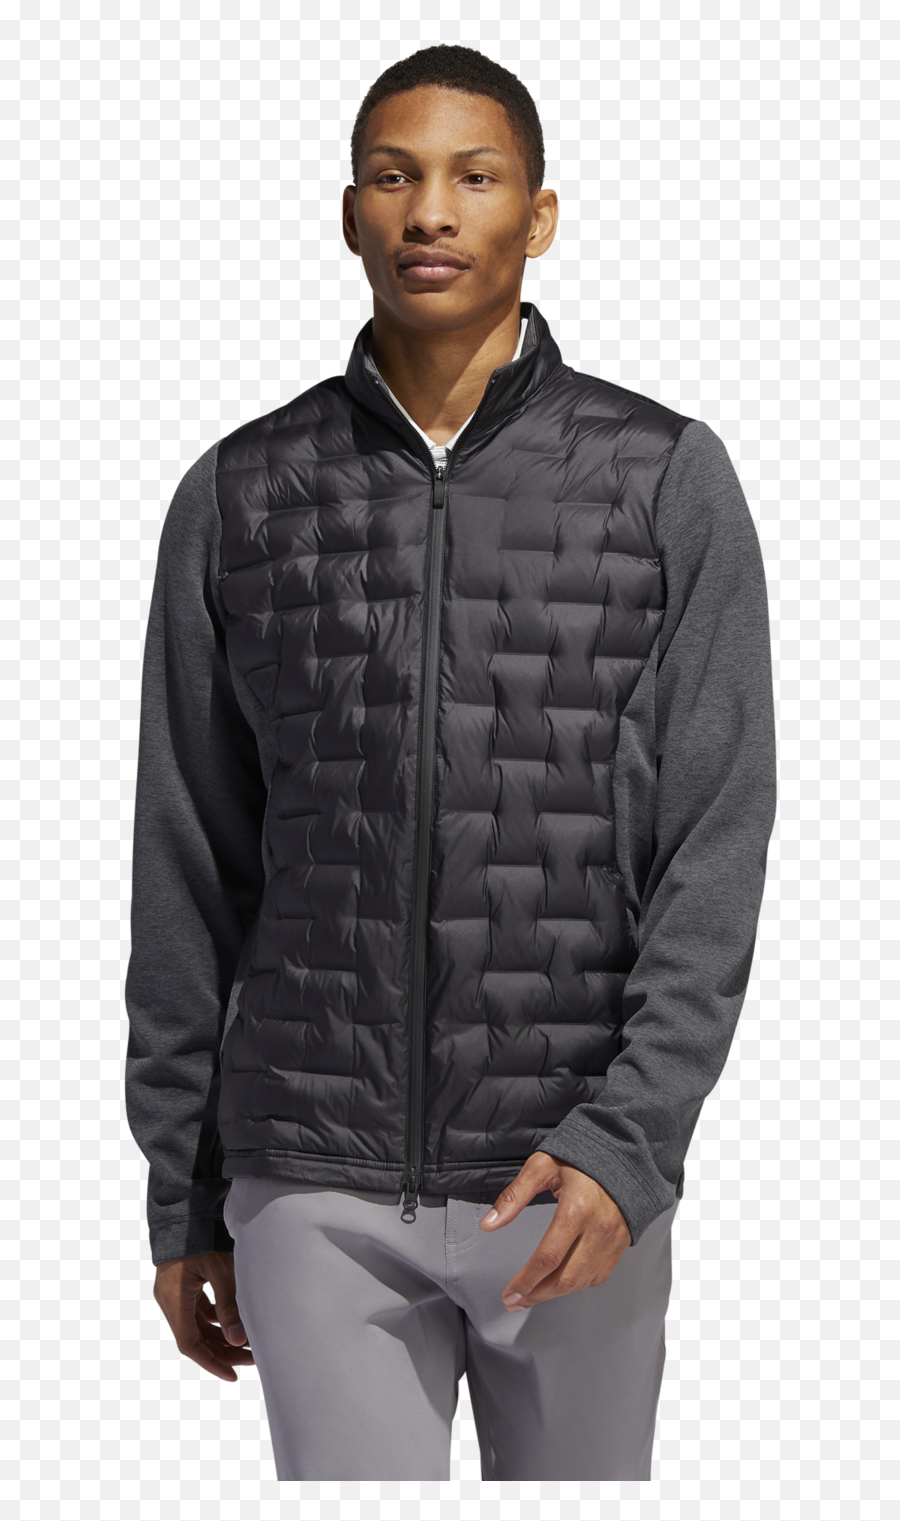 Frostguard Insulated Jacket - Adidas Frostguard Jacket Uk Png,Adidas Icon Jacket